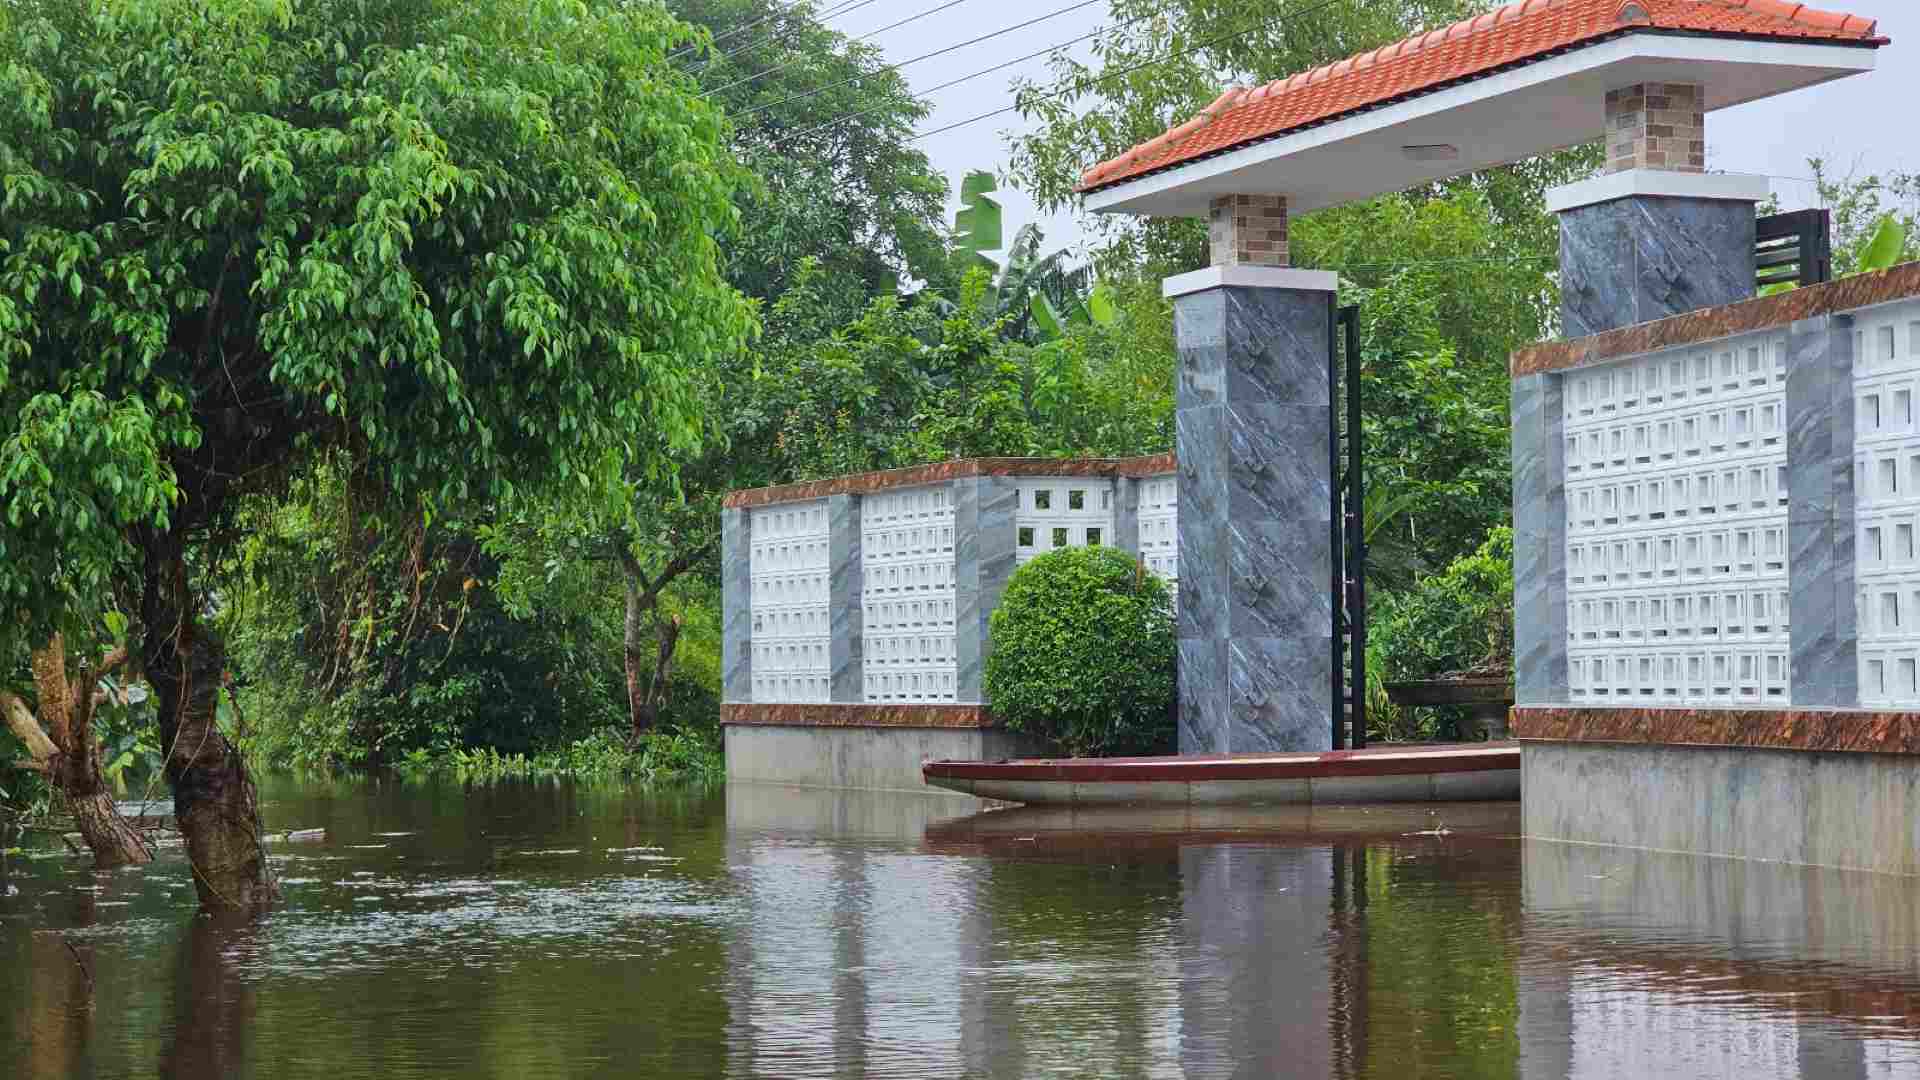 Cái làng thấp trũng nhất ở Thừa Thiên Huế, ngan, vịt bơi đầy sân, gà &quot;chạy&quot; lên gác, đường xóm thành sông - Ảnh 11.